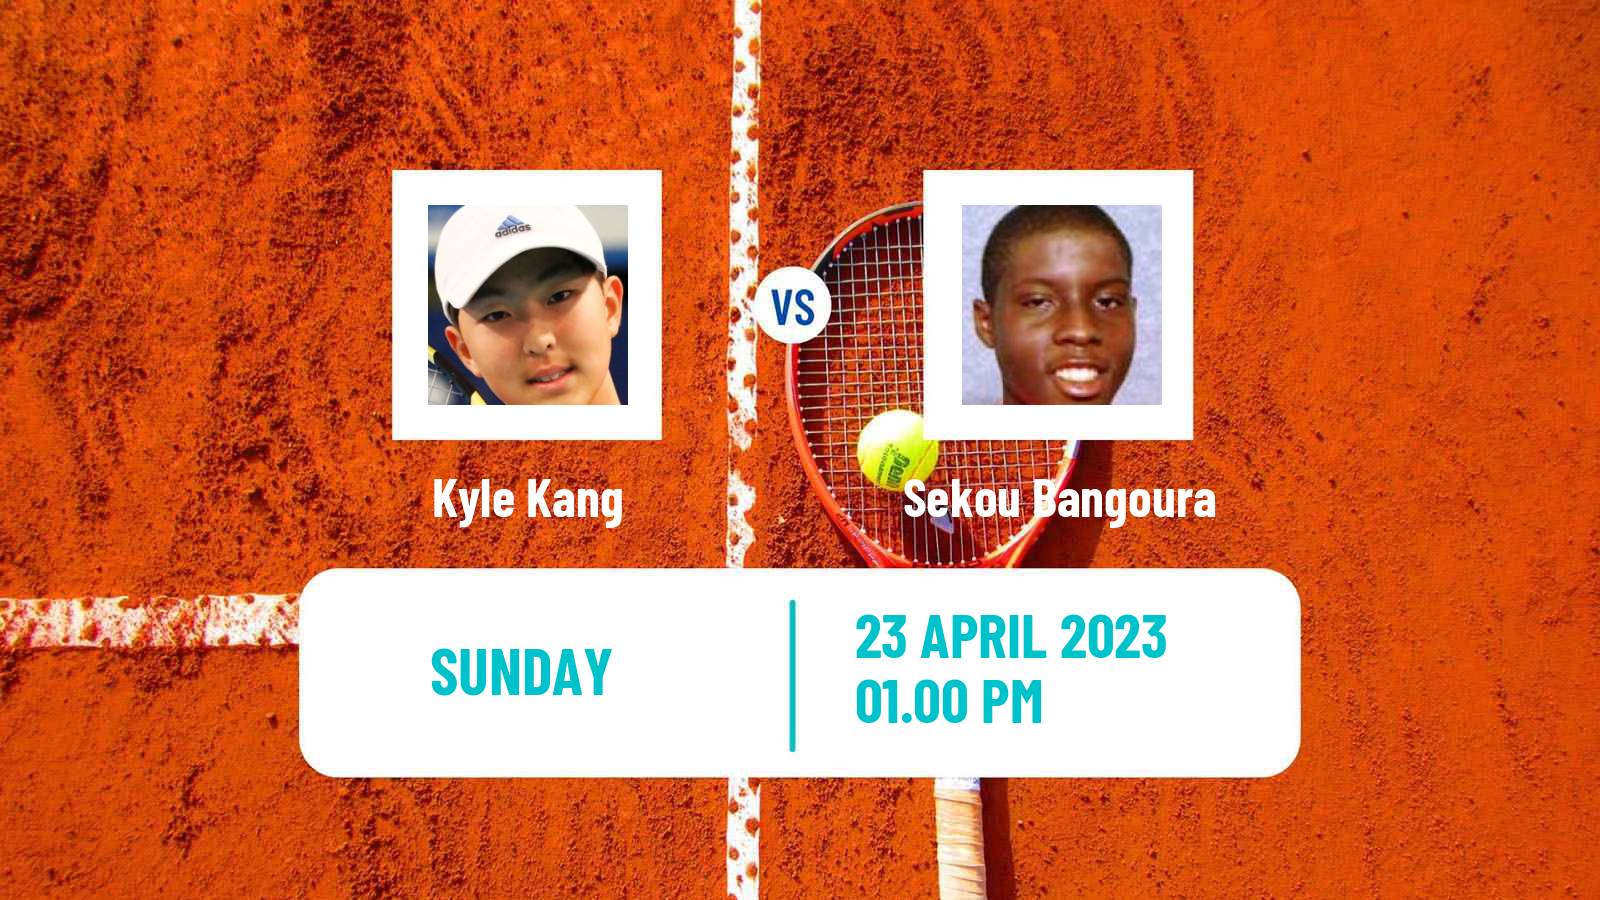 Tennis ATP Challenger Kyle Kang - Sekou Bangoura